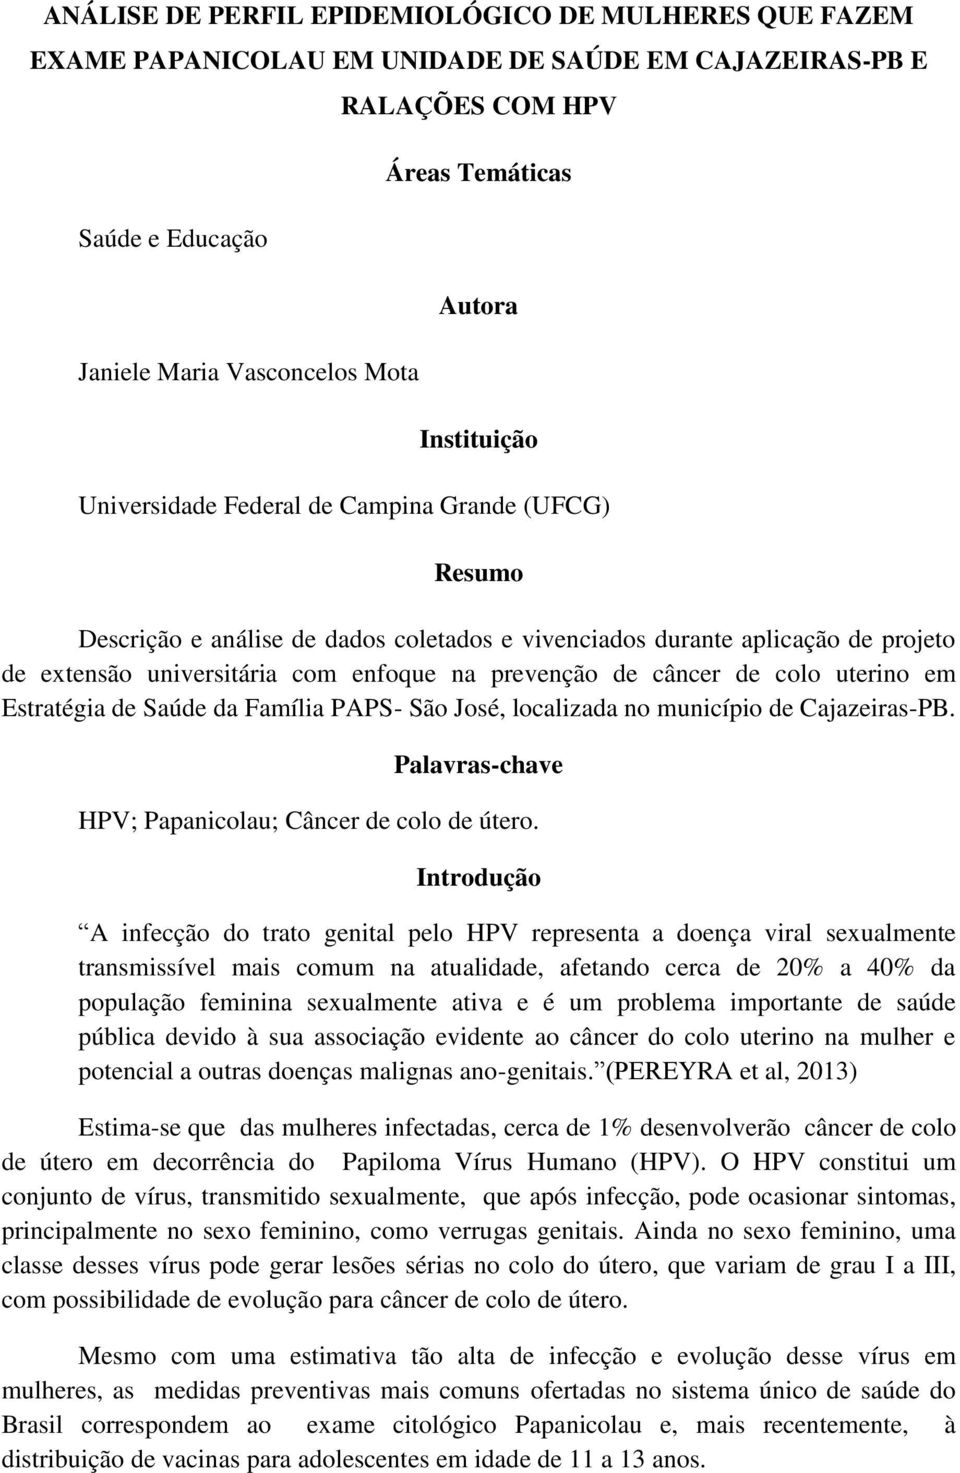 de câncer de colo uterino em Estratégia de Saúde da Família PAPS- São José, localizada no município de Cajazeiras-PB. Palavras-chave HPV; Papanicolau; Câncer de colo de útero.